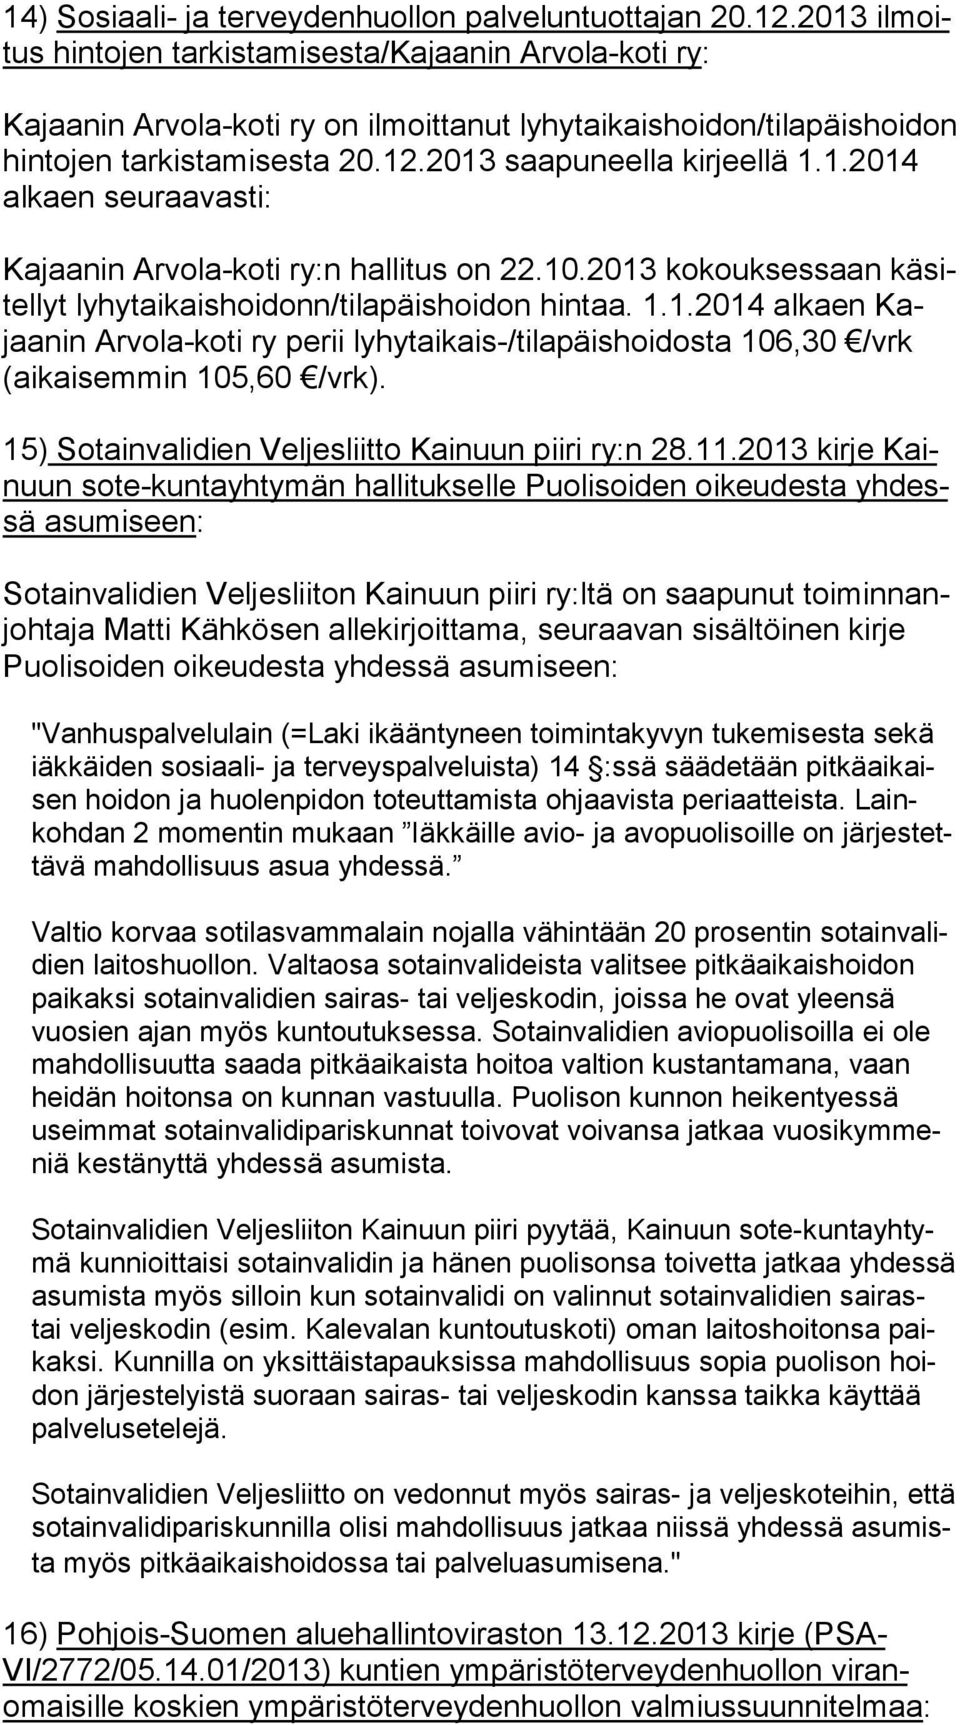 2013 saapuneella kirjeellä 1.1.2014 alkaen seuraavasti: Kajaanin Arvola-koti ry:n hallitus on 22.10.2013 kokouksessaan kä sitel lyt lyhytaikaishoidonn/tilapäishoidon hintaa. 1.1.2014 alkaen Kajaa nin Arvola-koti ry perii lyhytaikais-/tilapäishoidosta 106,30 /vrk (ai kai sem min 105,60 /vrk).